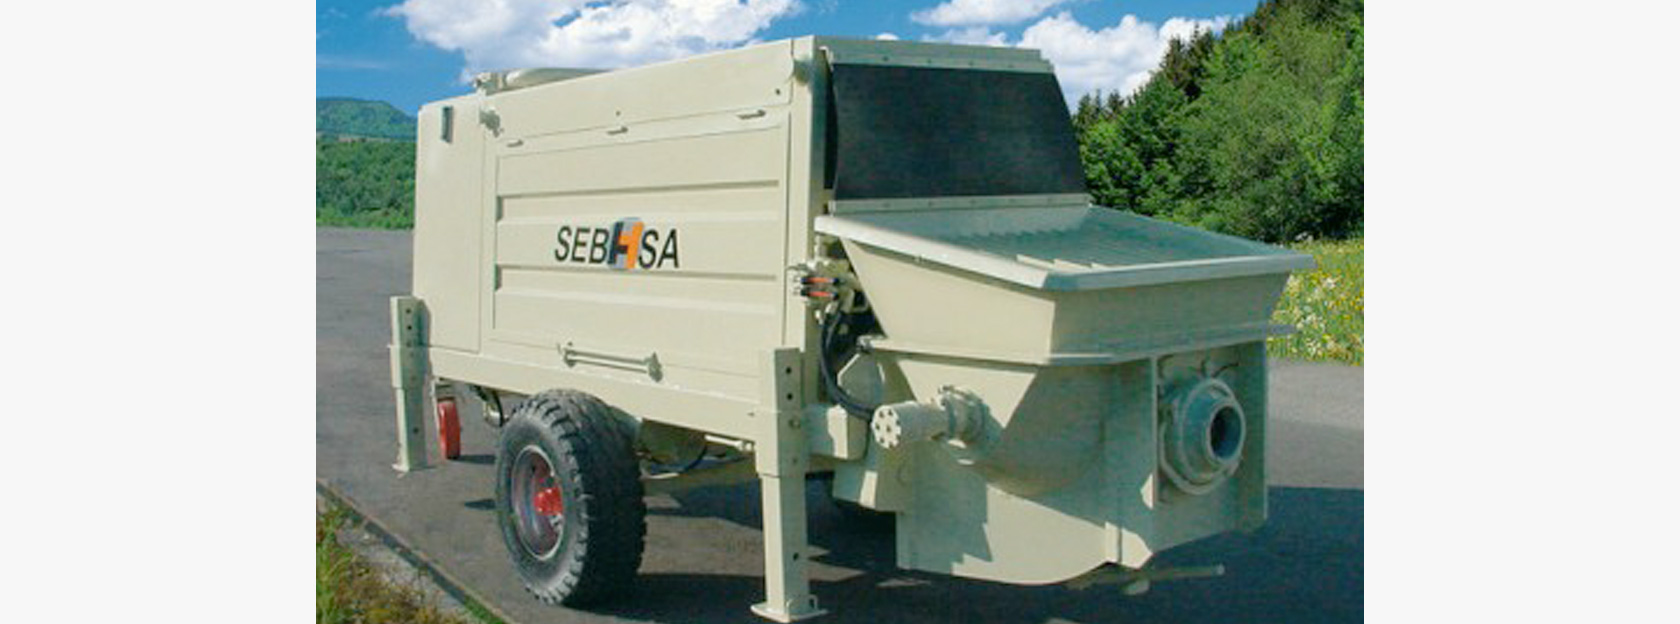 Sebhsa ofrece una amplia variedad de bombas de hormigón versátiles y de alta calidad para satisfacer todas las necesidades de bombeo de hormigón de cualquier proyecto.